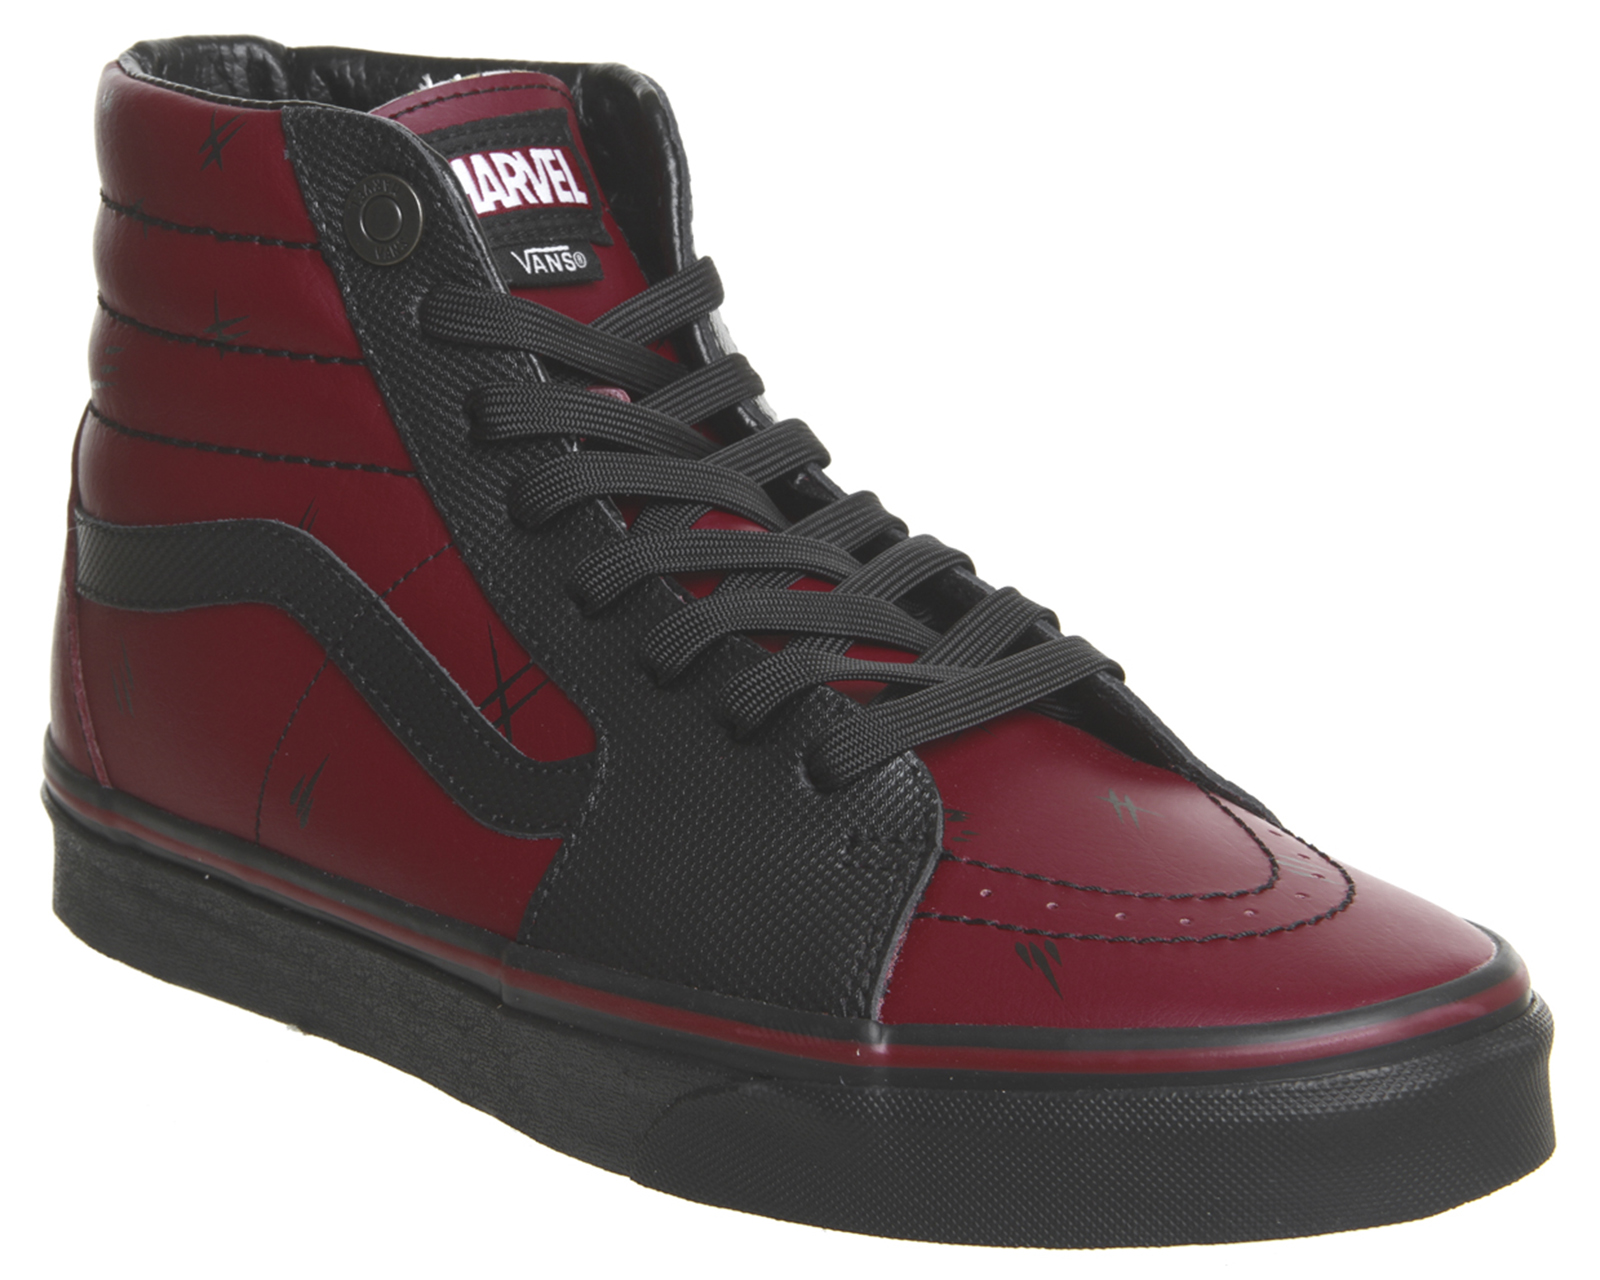 Vans Deadpool Shoes on Sale, SAVE 41% - lutheranems.com